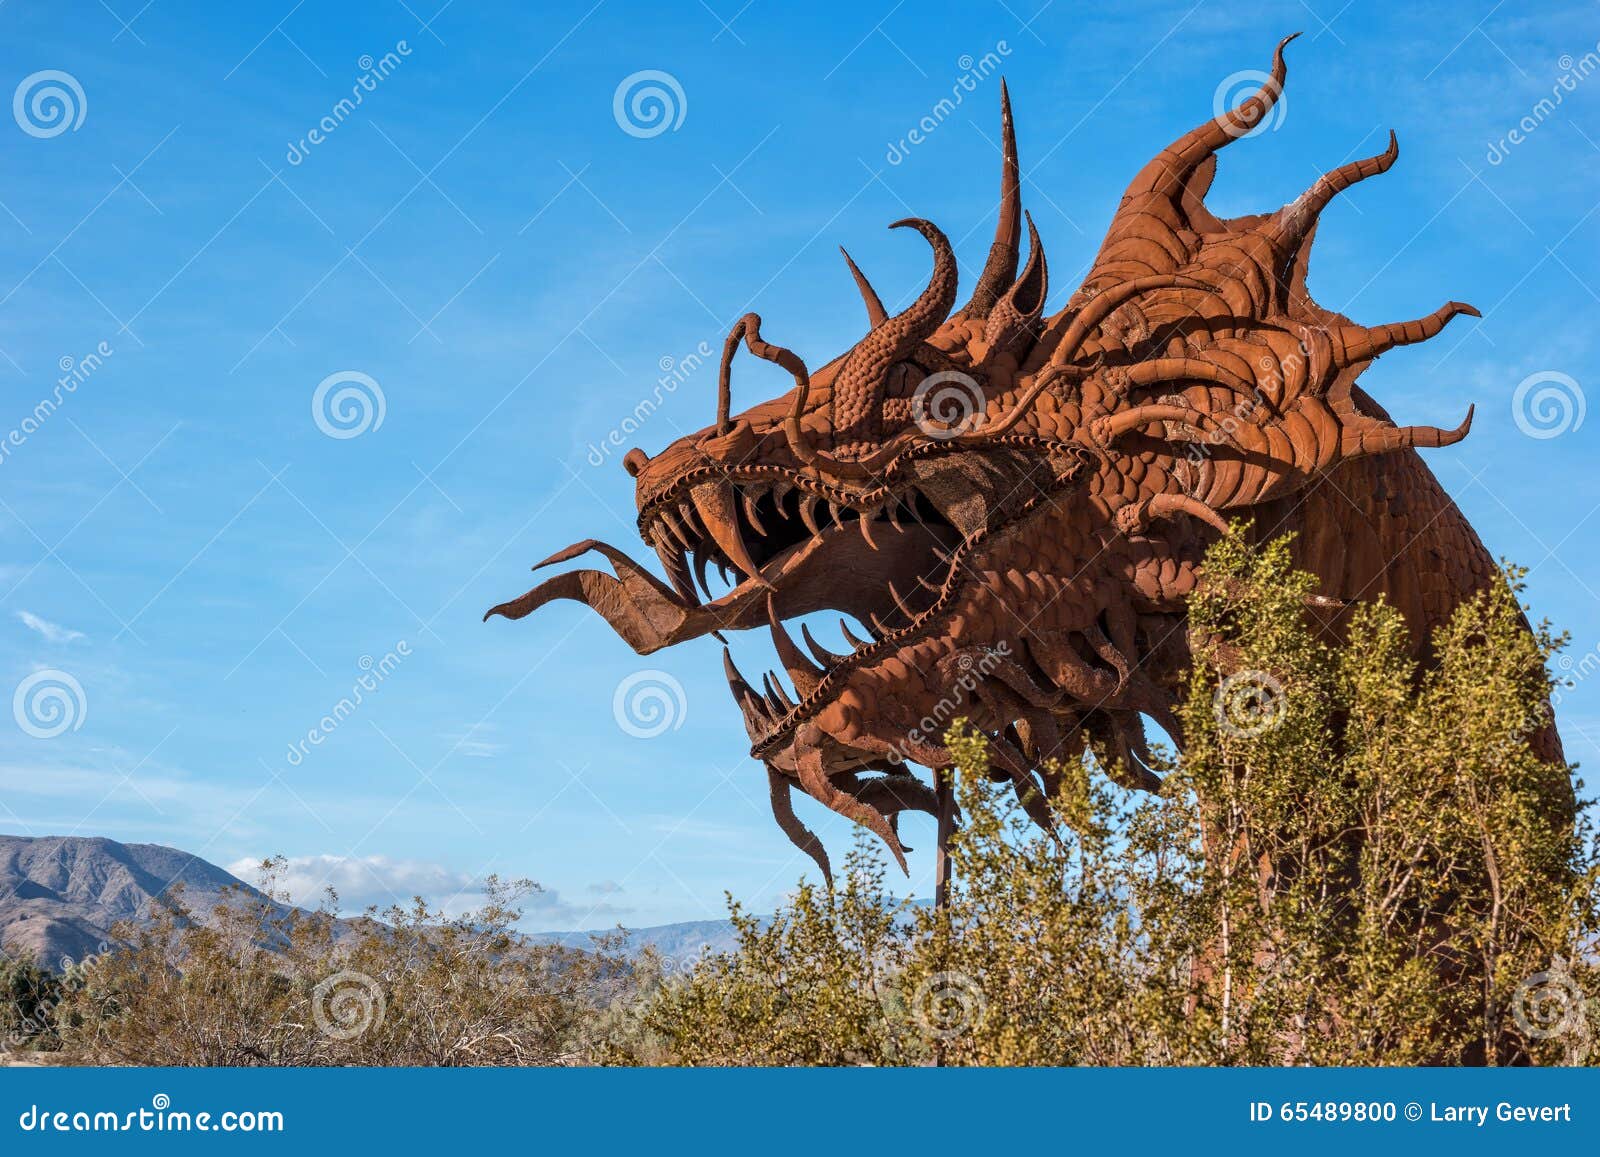 dragon's head in galleta meadows